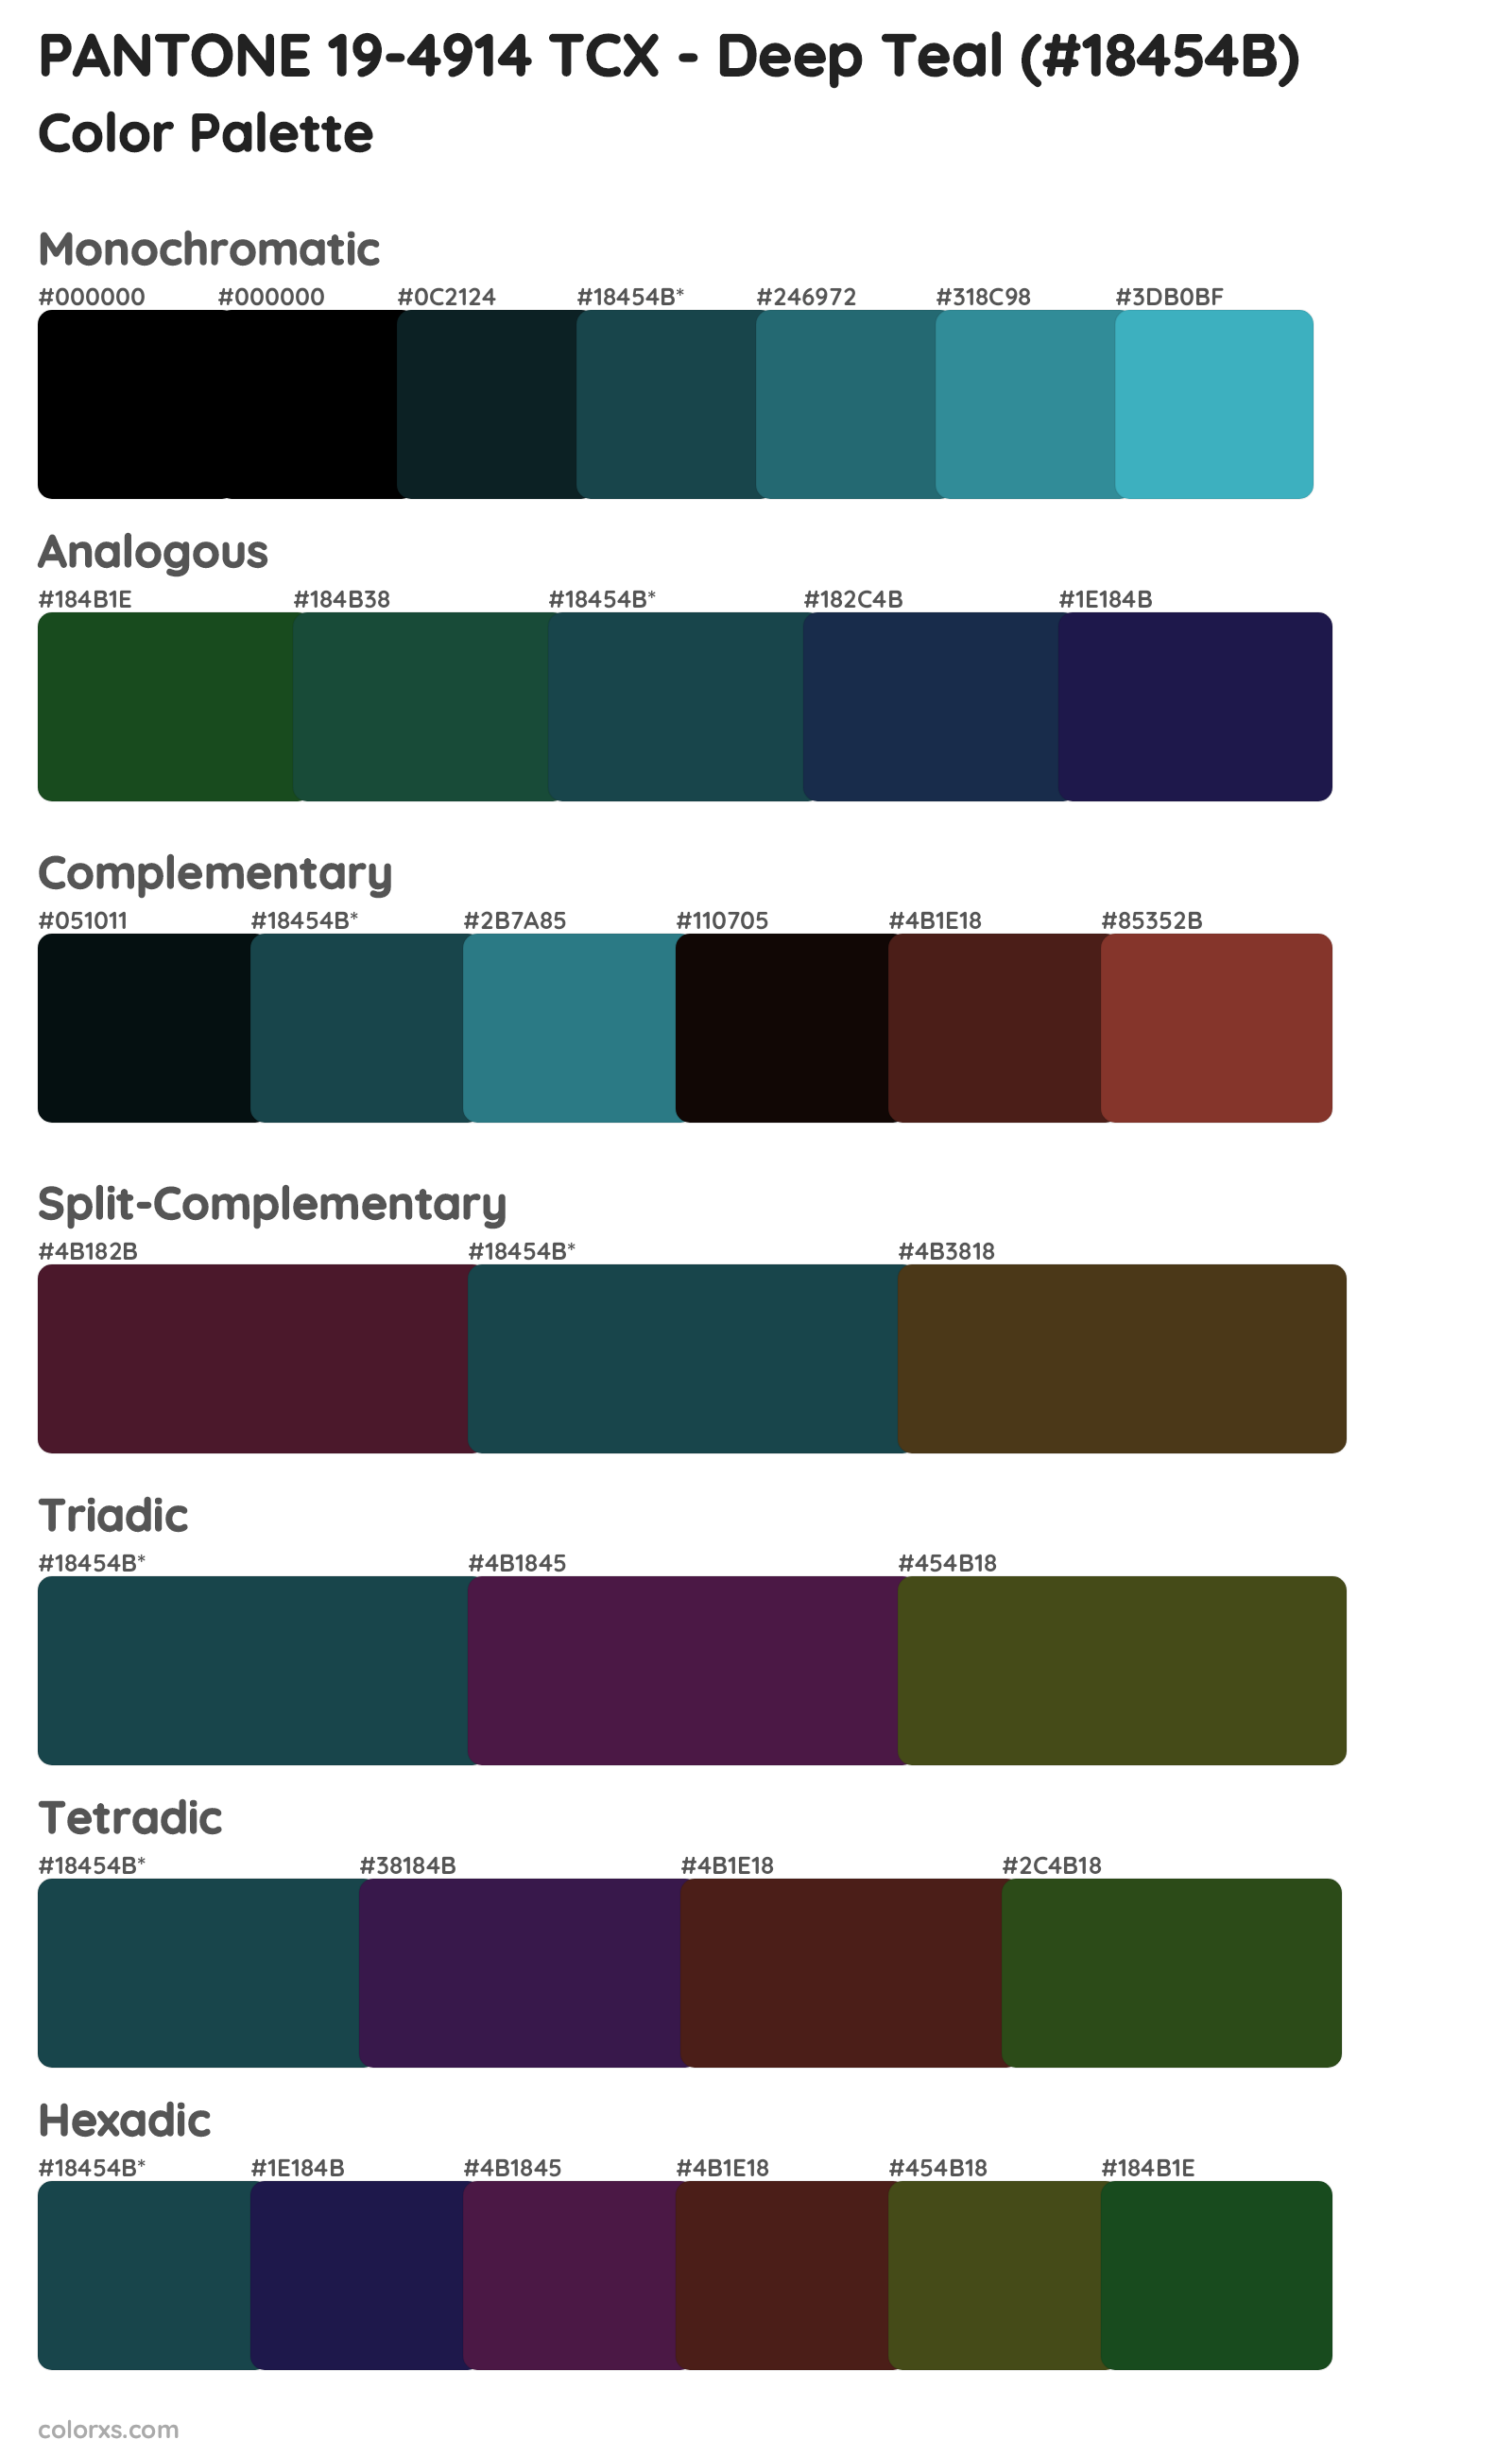 PANTONE 19-4914 TCX - Deep Teal Color Scheme Palettes